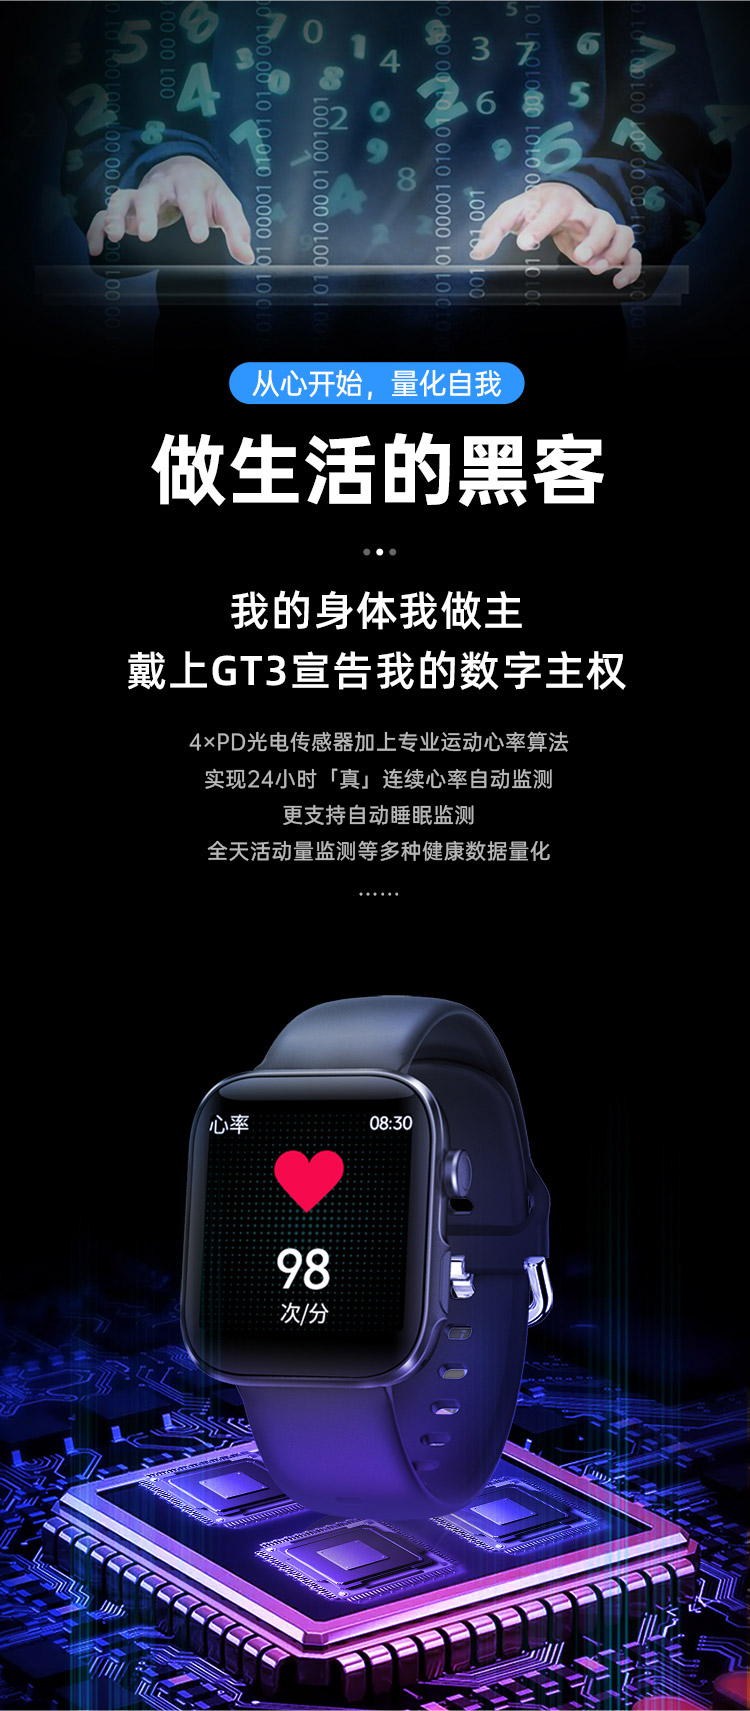 物果 2021新品 GT3智能手表1.54寸大屏自定义蓝牙通话体温心率血压监测 手表